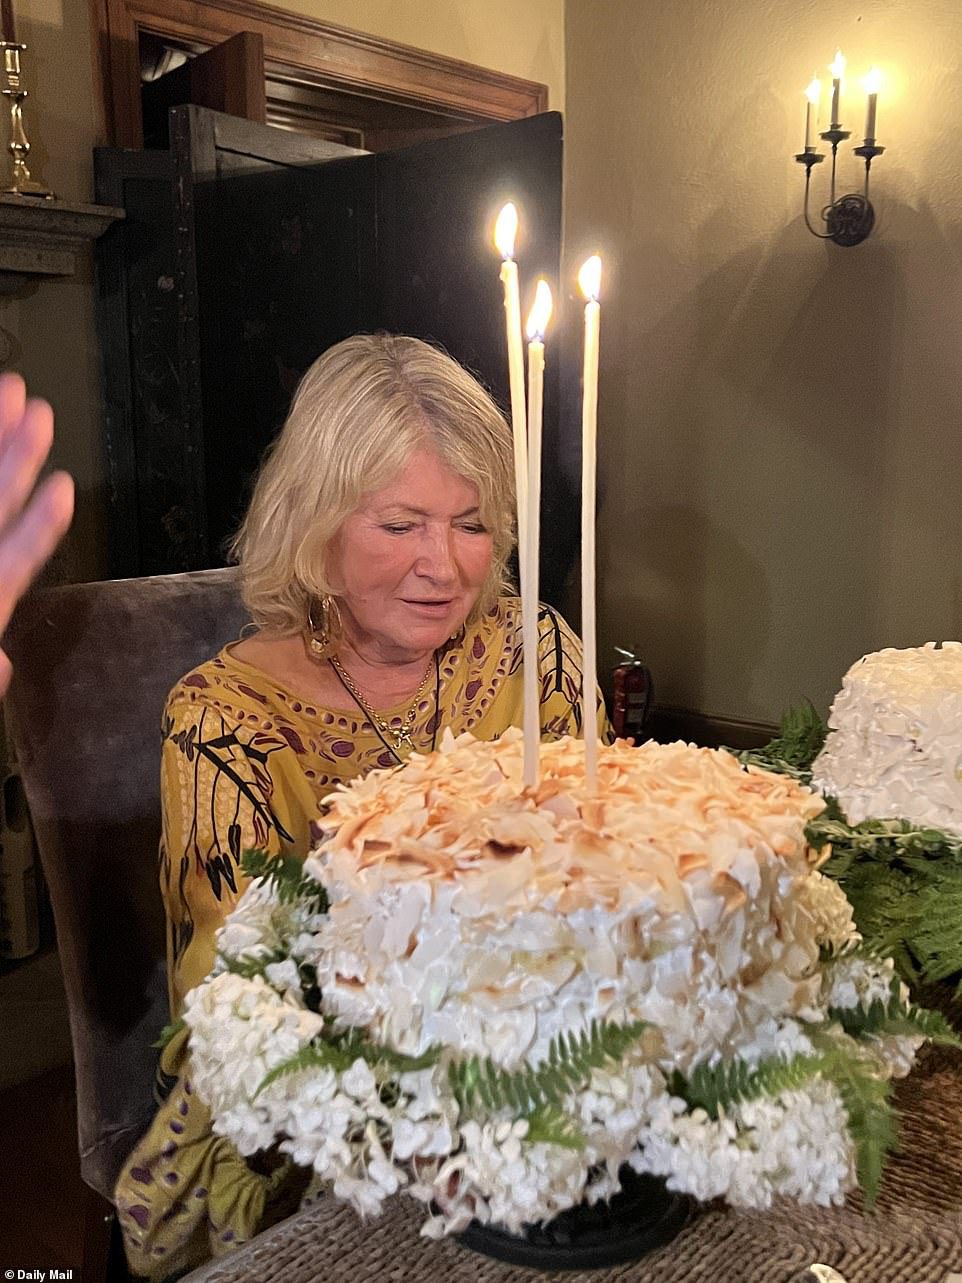 Tan delicioso: su delicioso pastel apareció en tres velas blancas